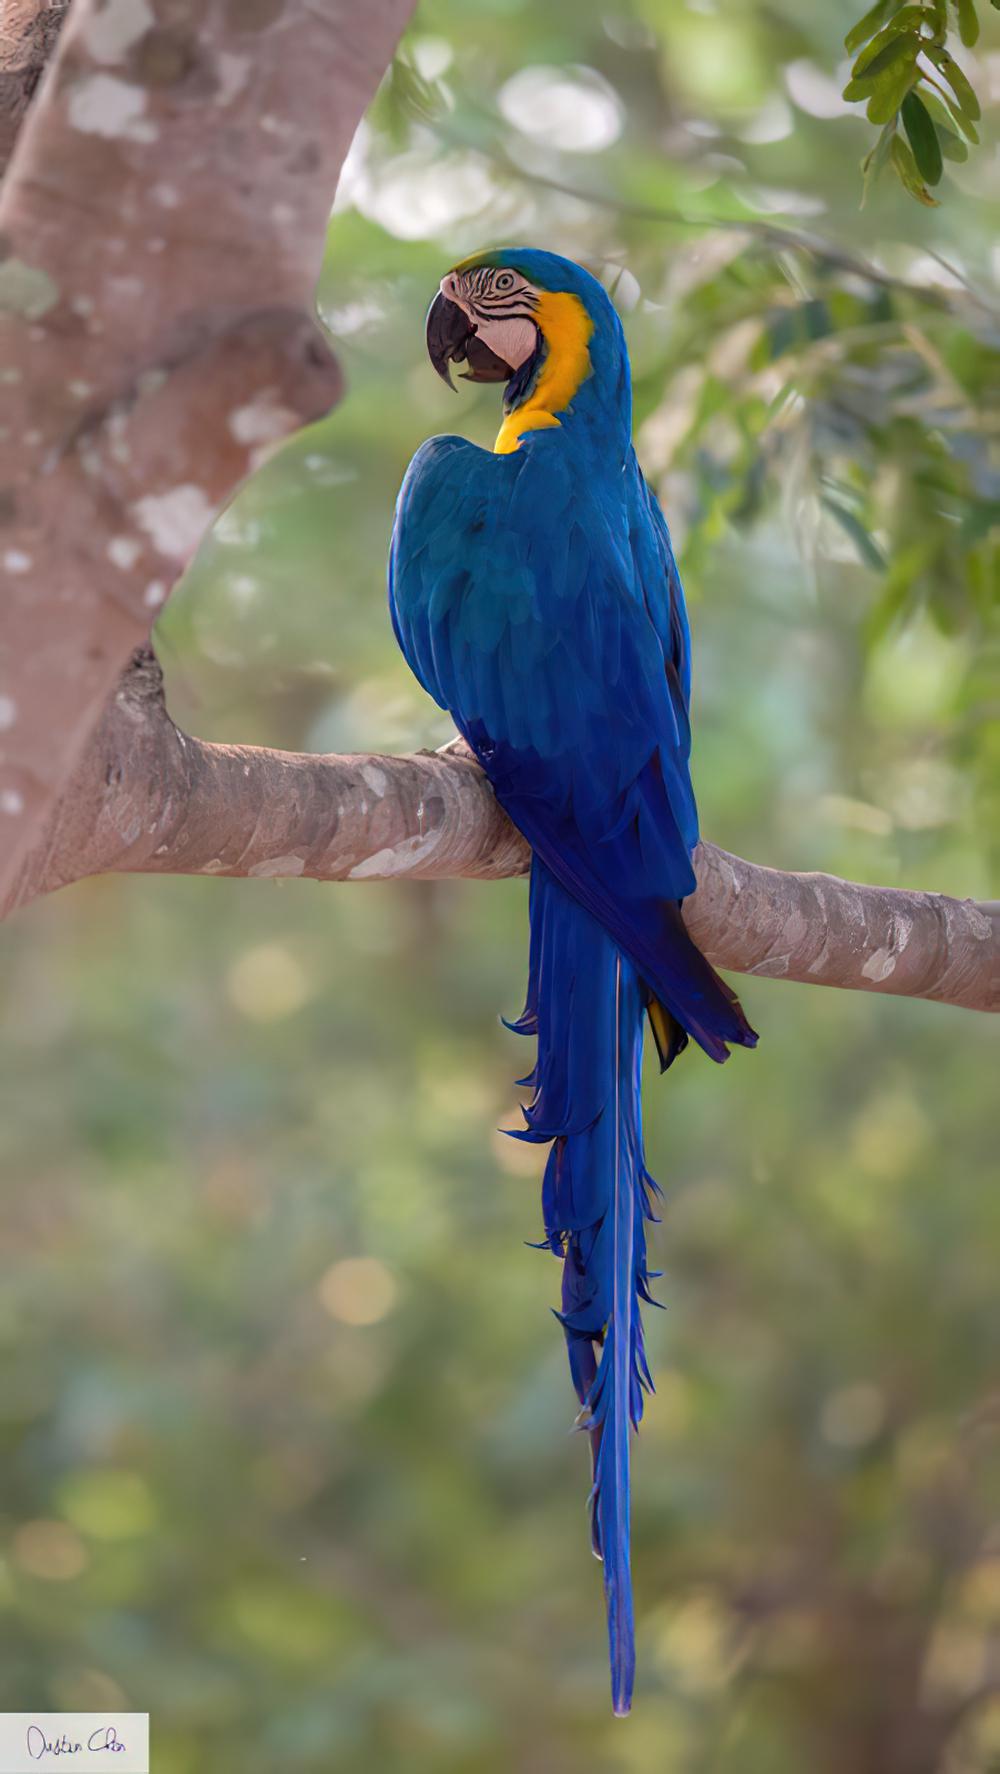 琉璃金刚鹦鹉 / Blue-and-yellow Macaw / Ara ararauna